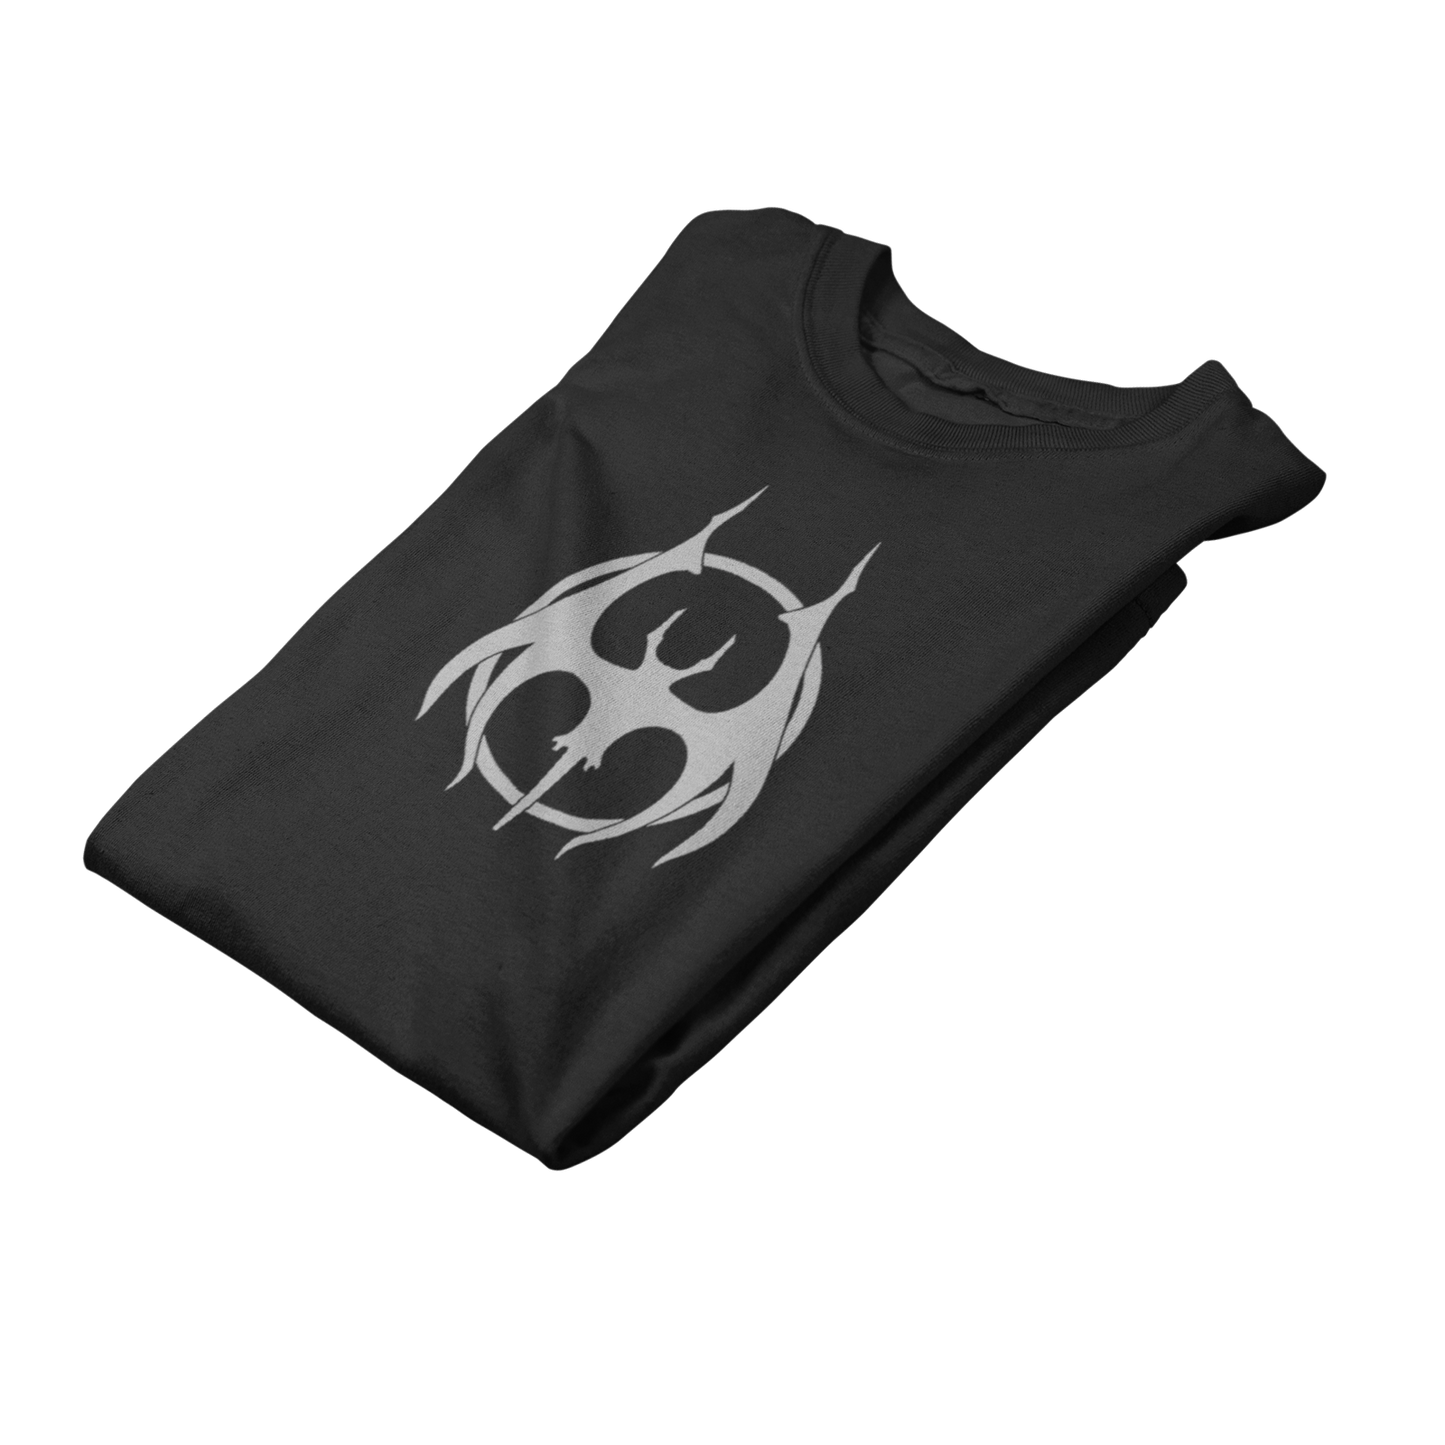 Vampire Clan - T-Shirt T-Shirts - Heromart